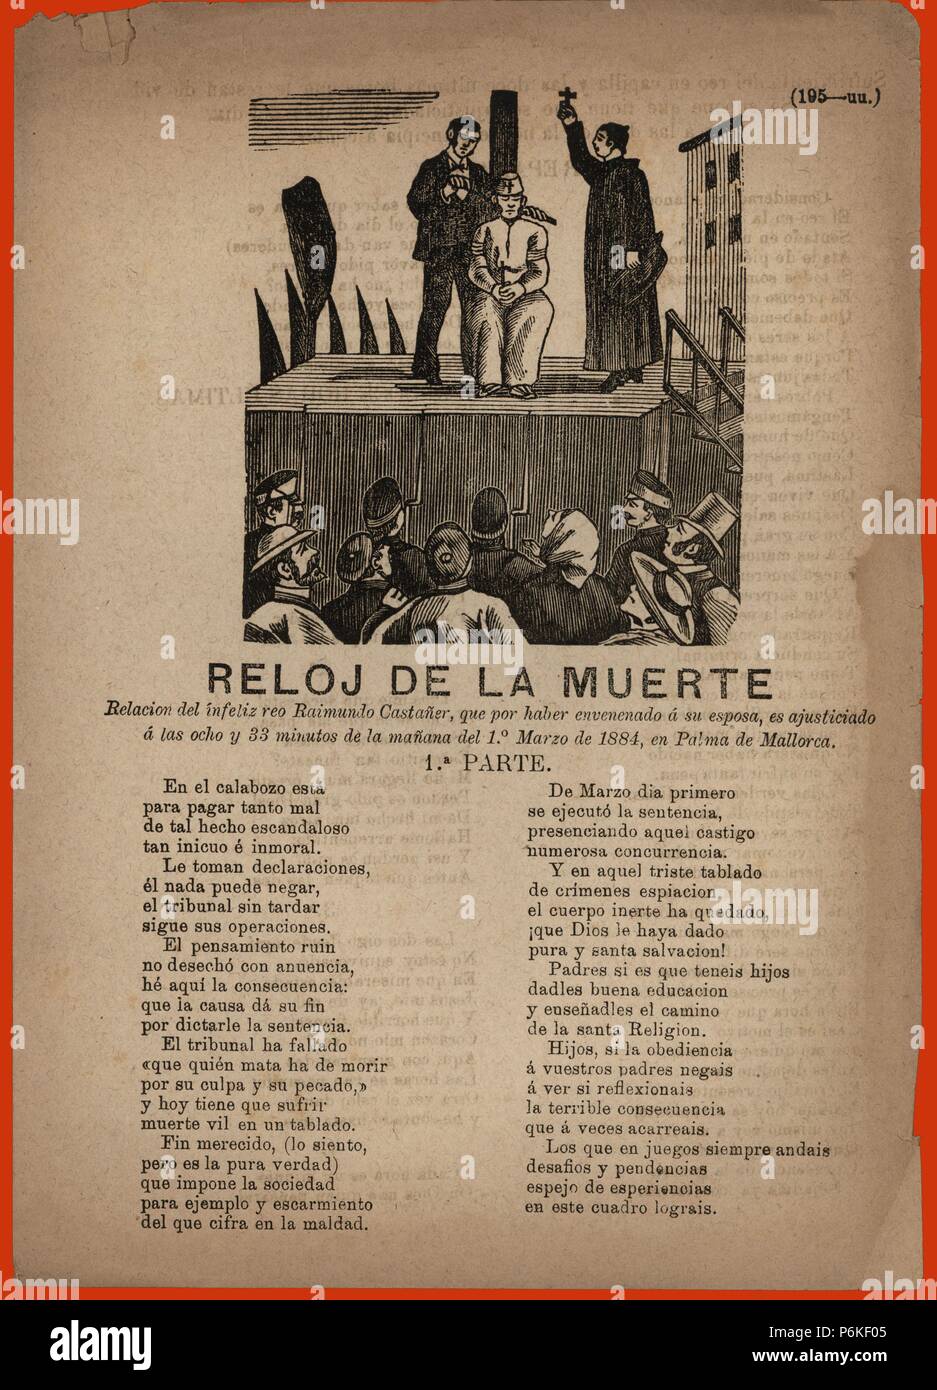 Reloj de la muerte. Pliego popular narrando el ajusticiamiento de un reo por garrote vil. Impreso en Palma de Mallorca, 1884. Stock Photo